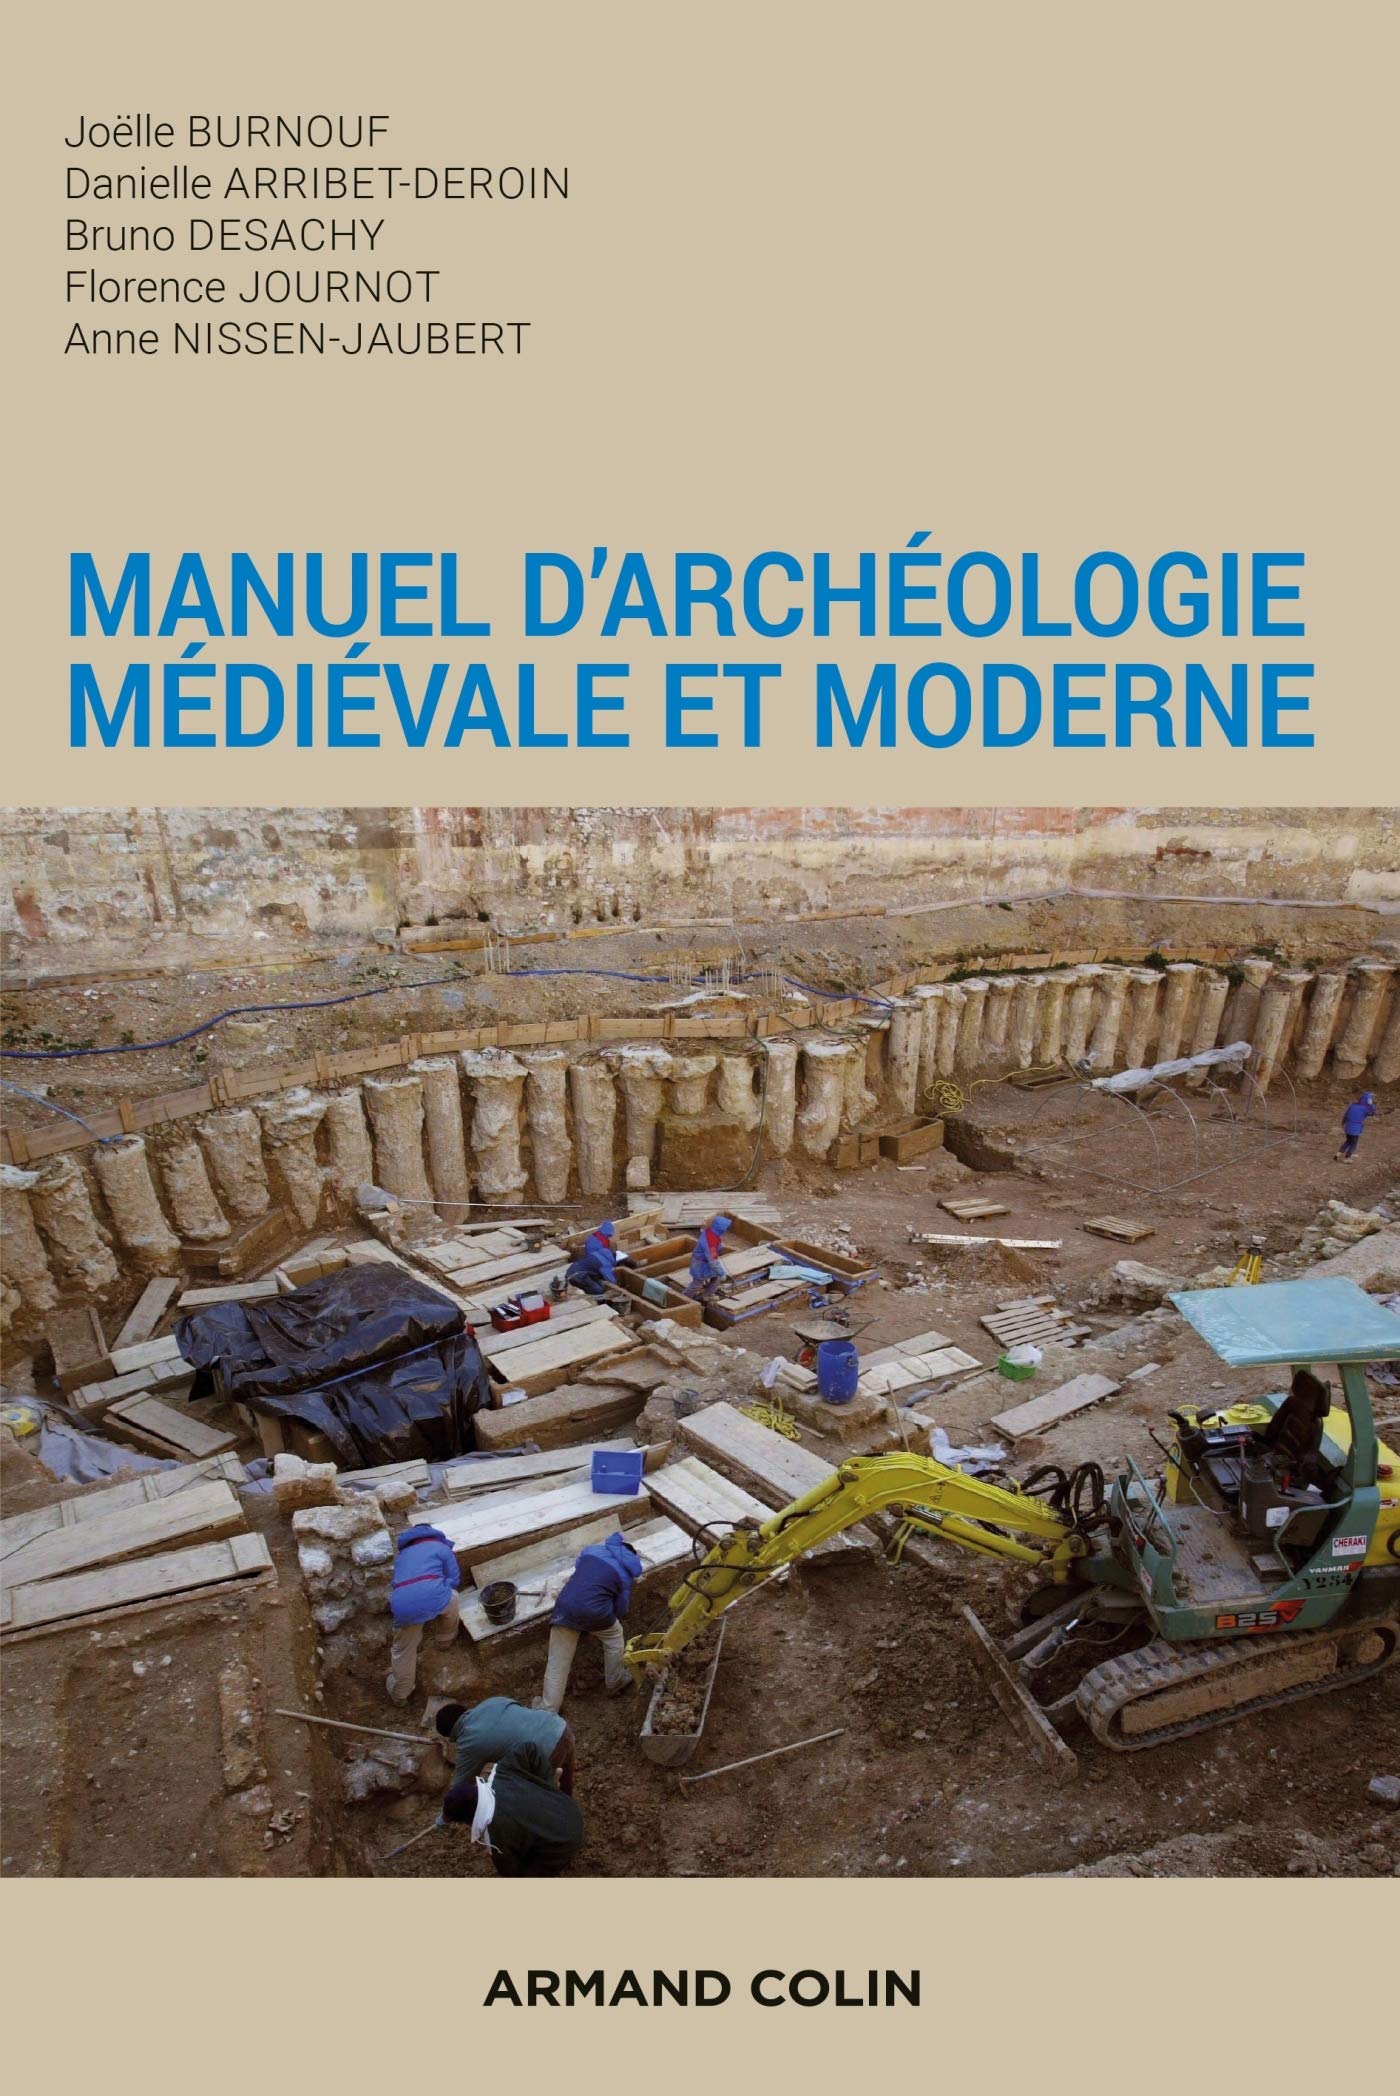 Manuel d'archéologie médiévale et moderne, 2020, 2e éd.